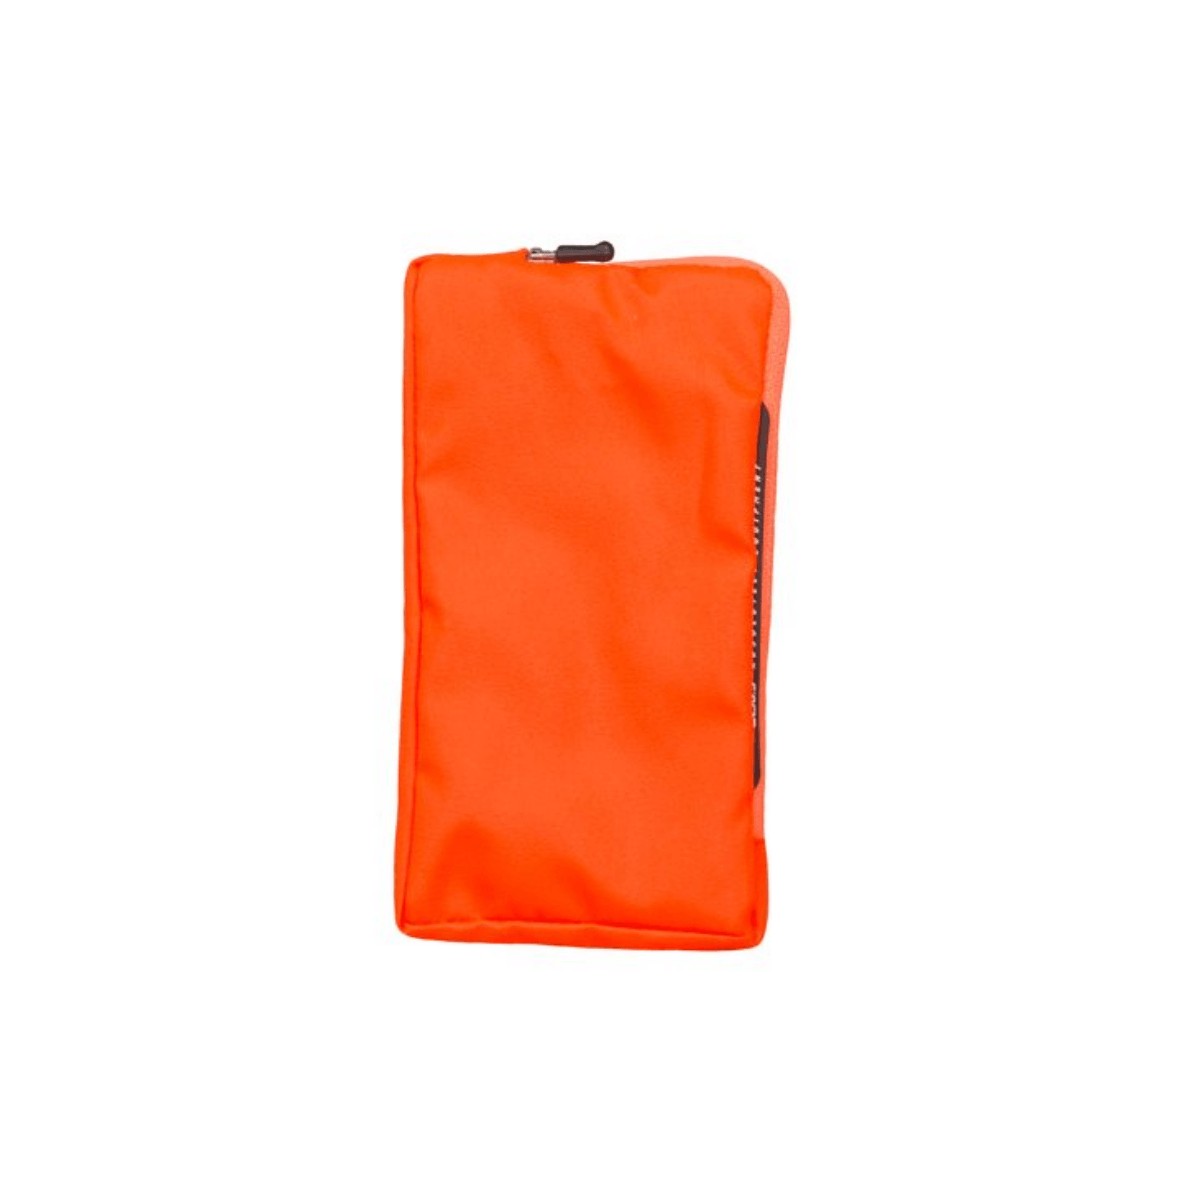 Um die  günstig Kaufen-Mobiler Halter Q36.5 Smart Protector Orange. Mobiler Halter Q36.5 Smart Protector Orange <![CDATA[Mobiler Halter Q36.5 Smart Protector Orange Eine große Besessenheit mit einem kleinen Problem: die perfekte Smartphone-Hülle zum Radfahren. Q36.5 nimmt die